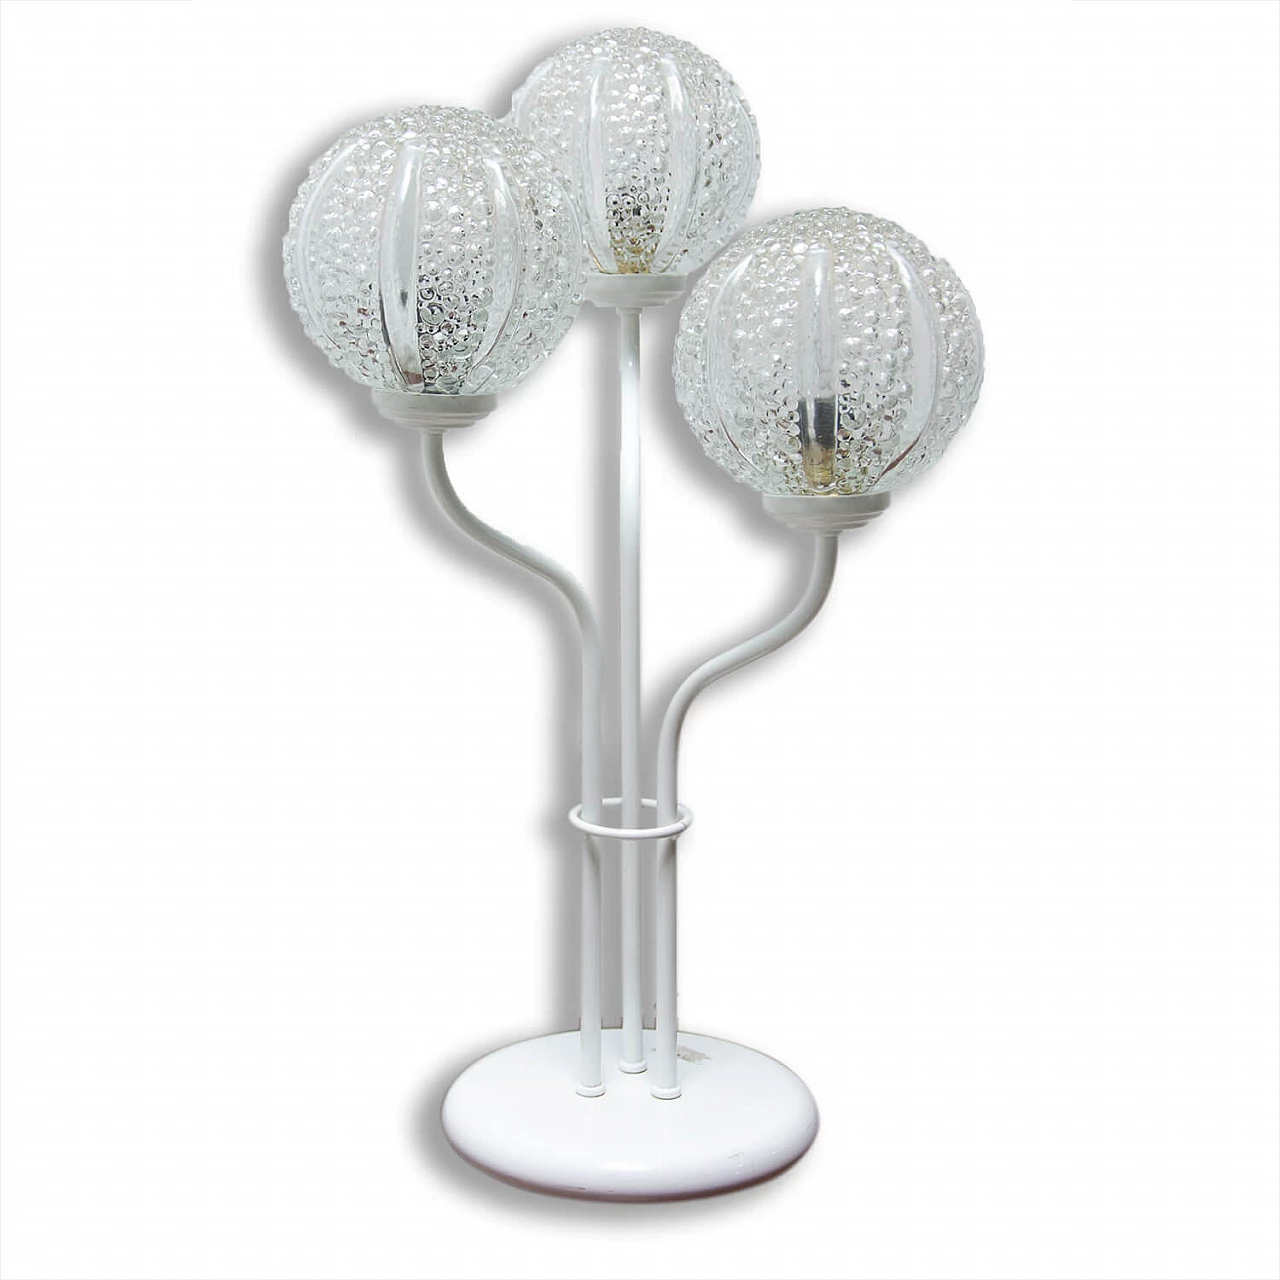 Flower table lamp, 1960s 1470991